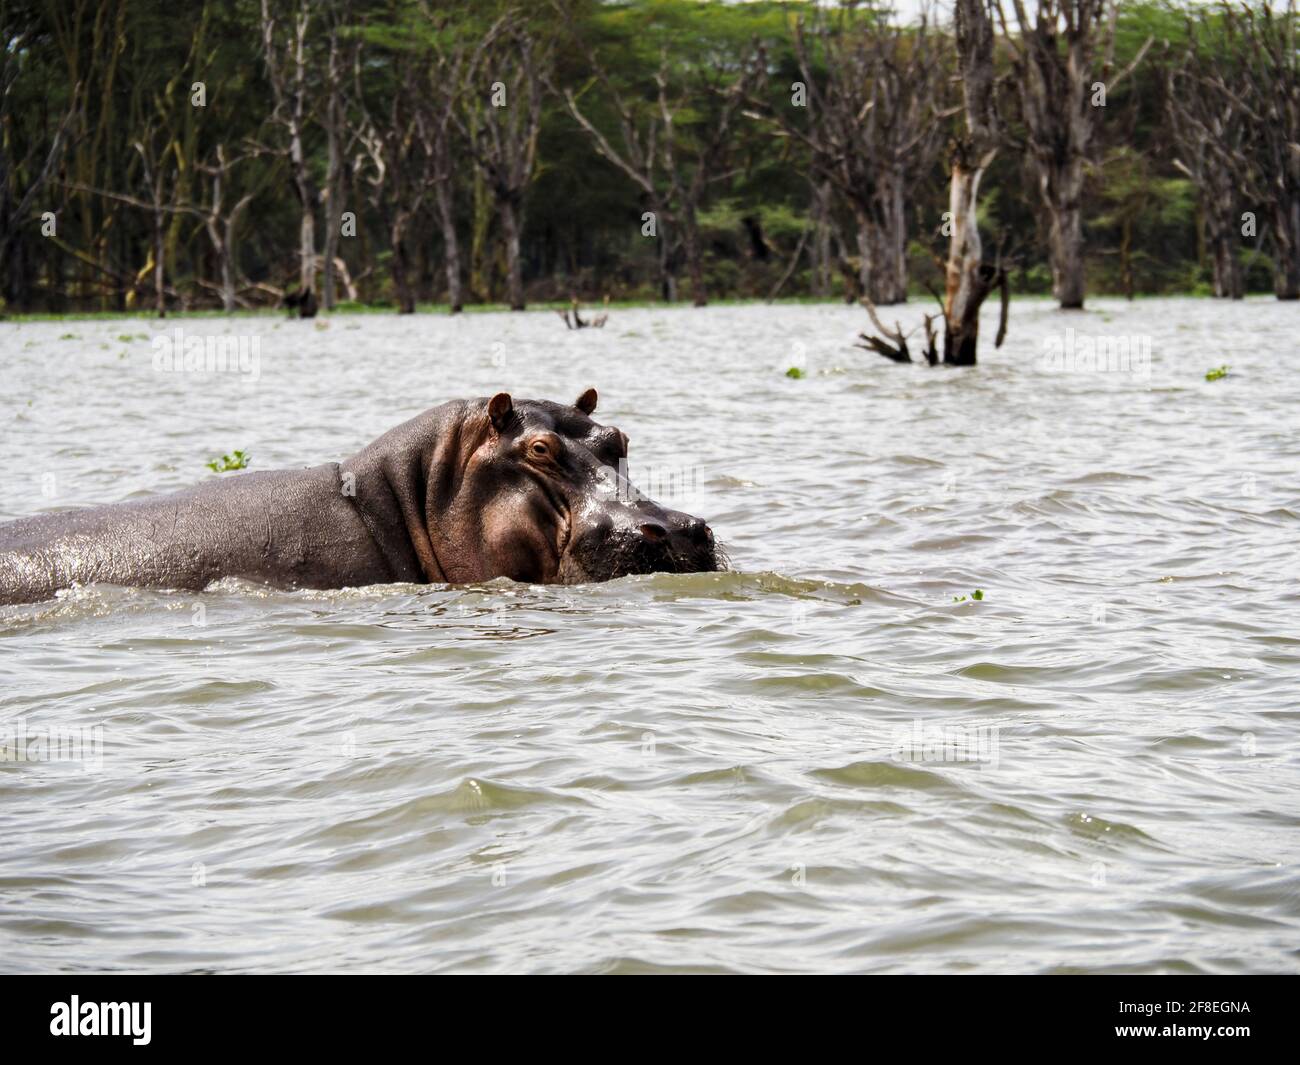 Lake Naivasha, Kenya, Africa - February 25, 2020: Hippos swimming through Lake Naivasha in Kenya, Africa Stock Photo